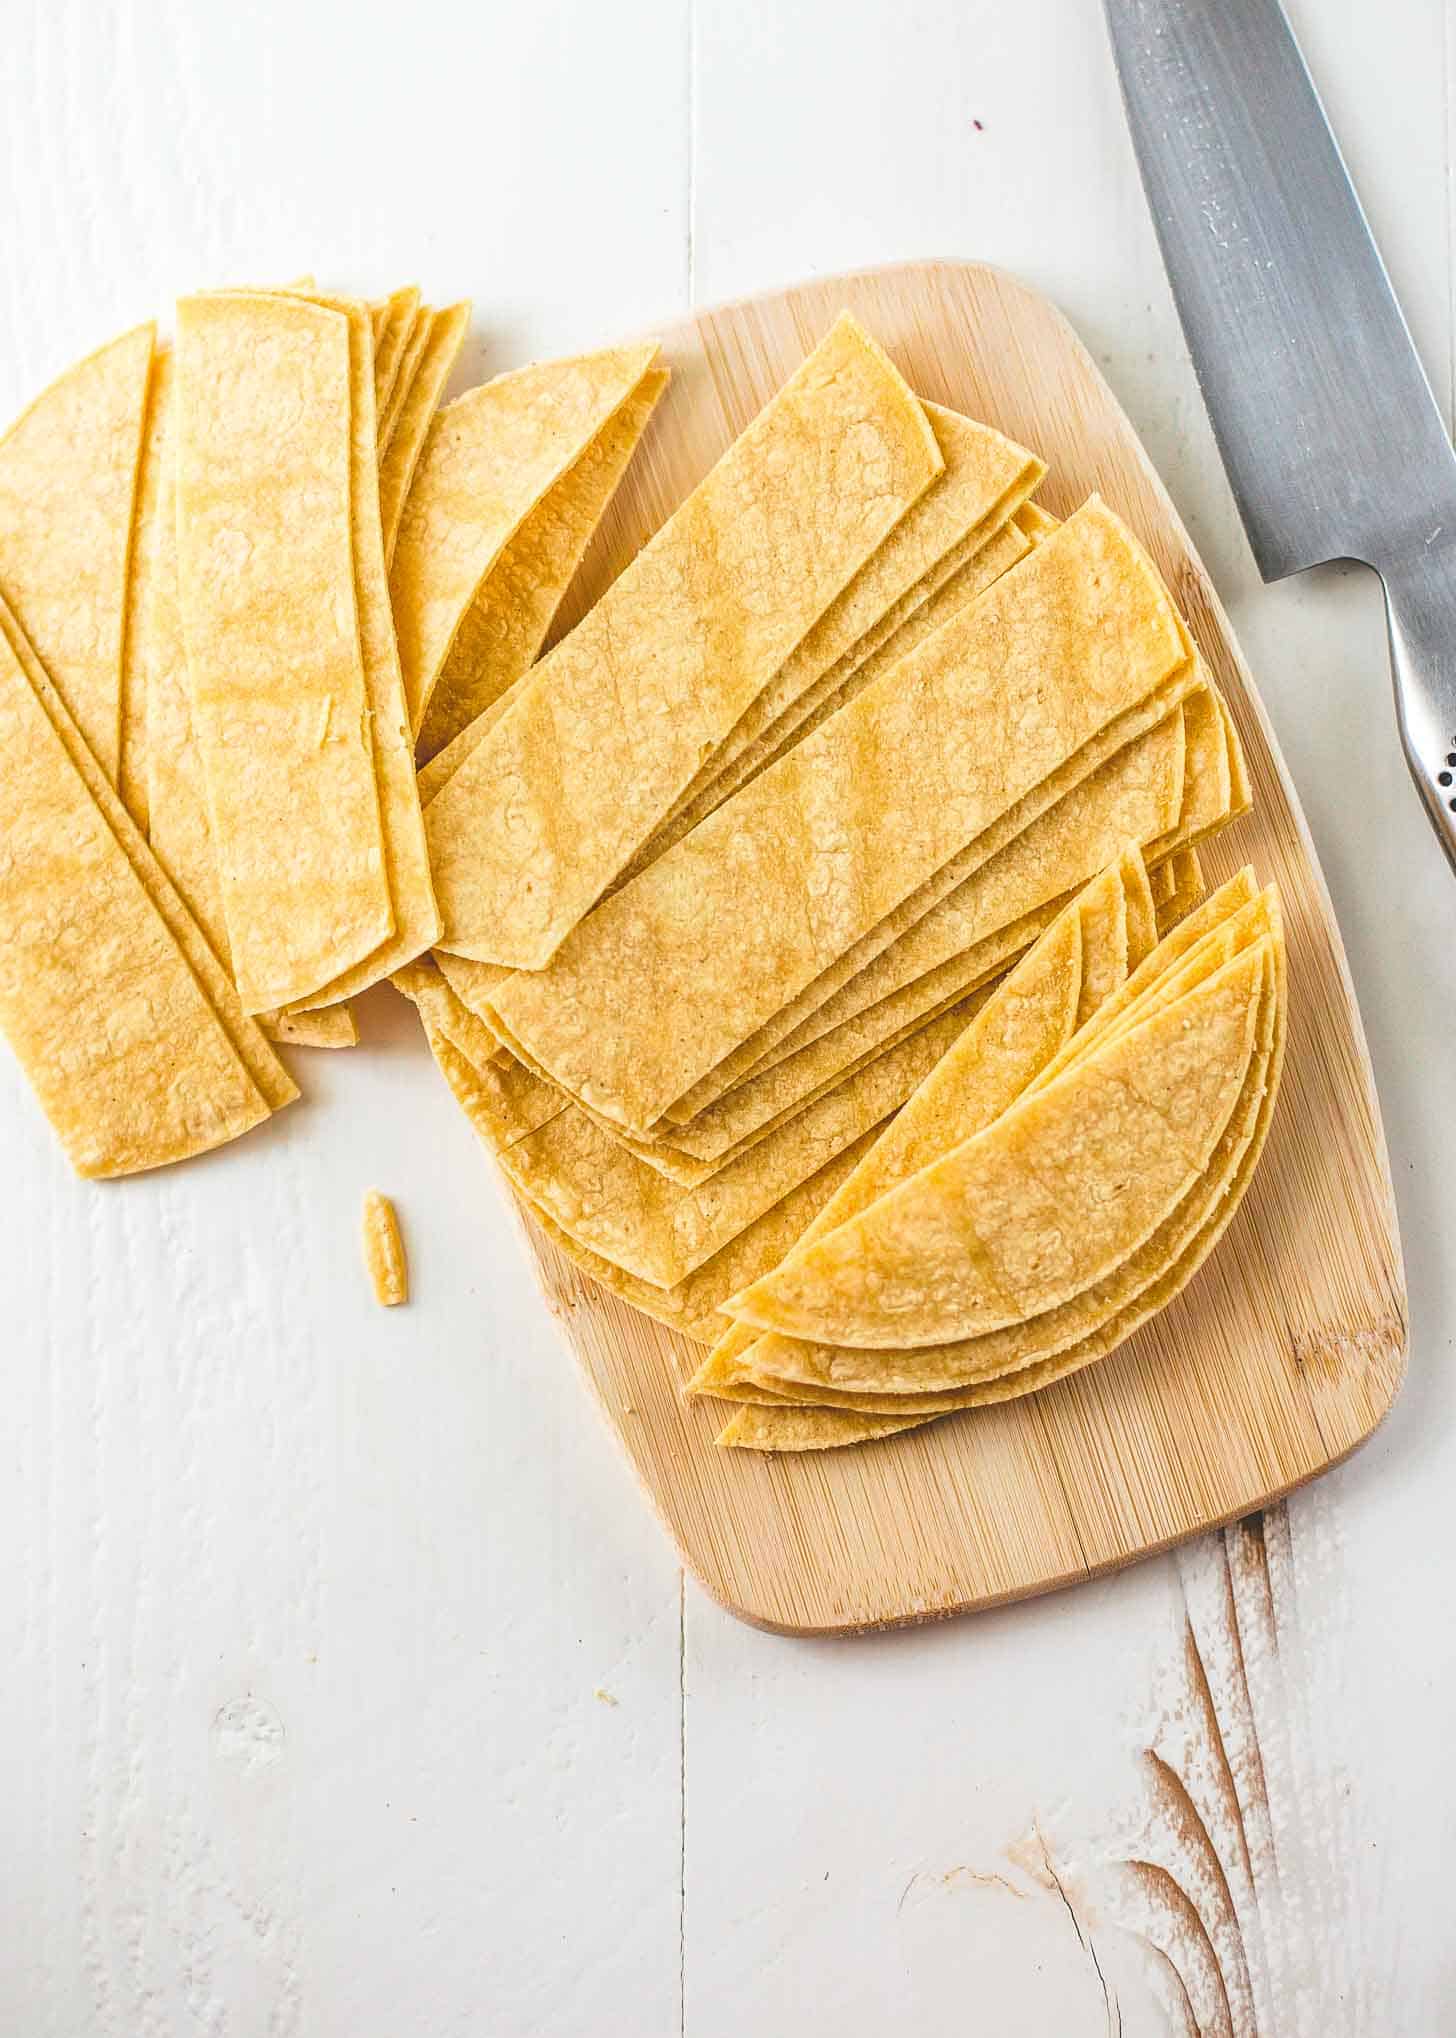 corn tortillas sliced on a cutting board